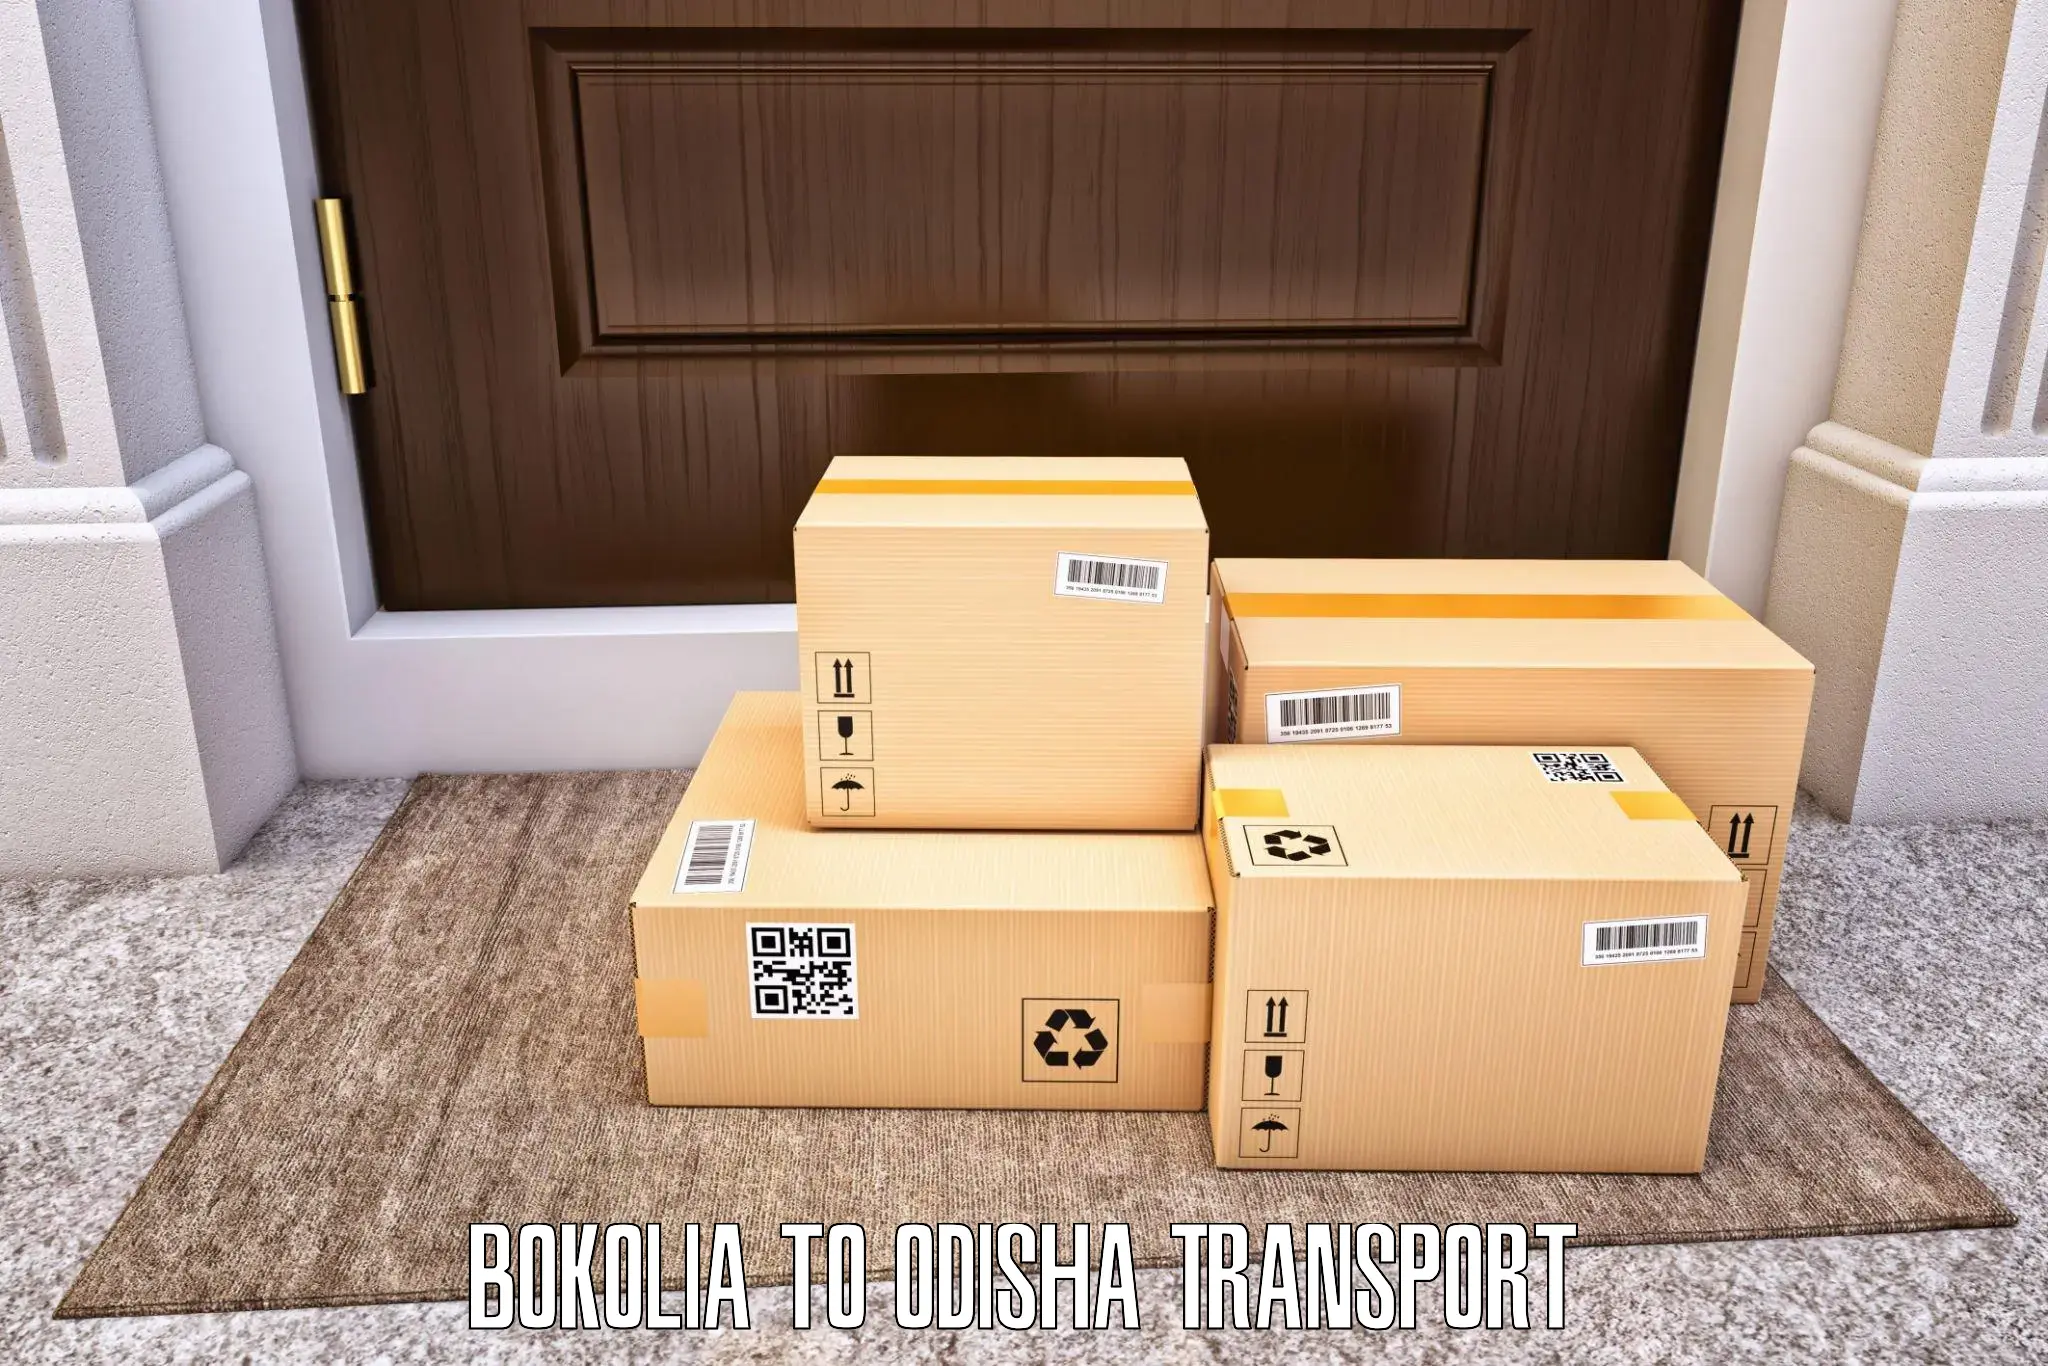 Online transport booking Bokolia to Kesinga